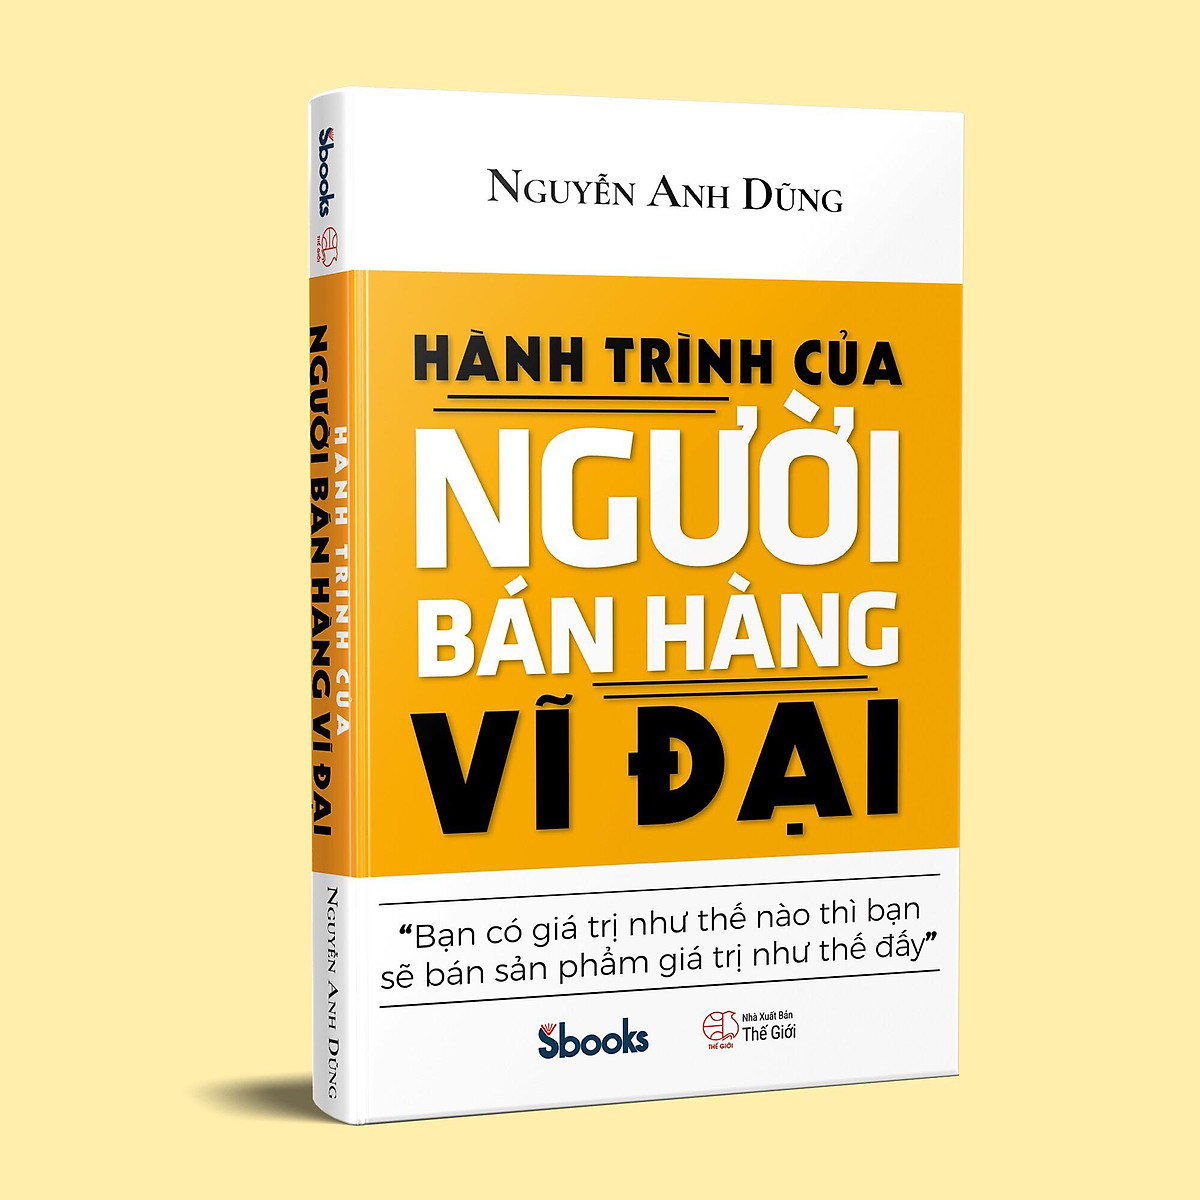 HÀNH TRÌNH CỦA NGƯỜI BÁN HÀNG VĨ ĐẠI - Nguyễn Anh Dũng ebook PDF-EPUB-AWZ3-PRC-MOBI